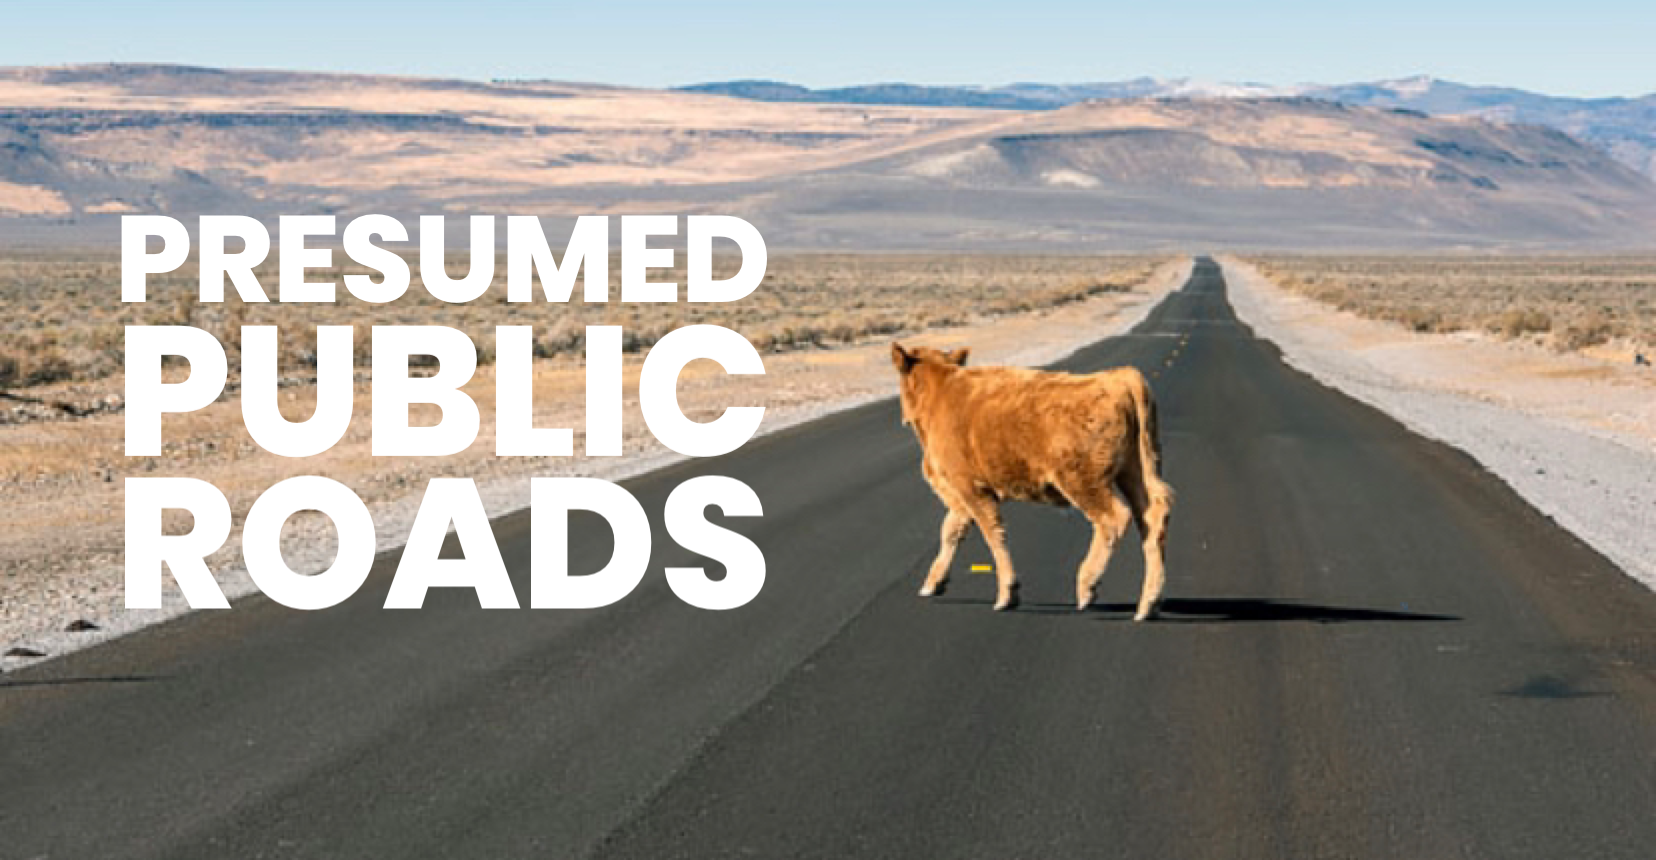 Presumed Public Roads